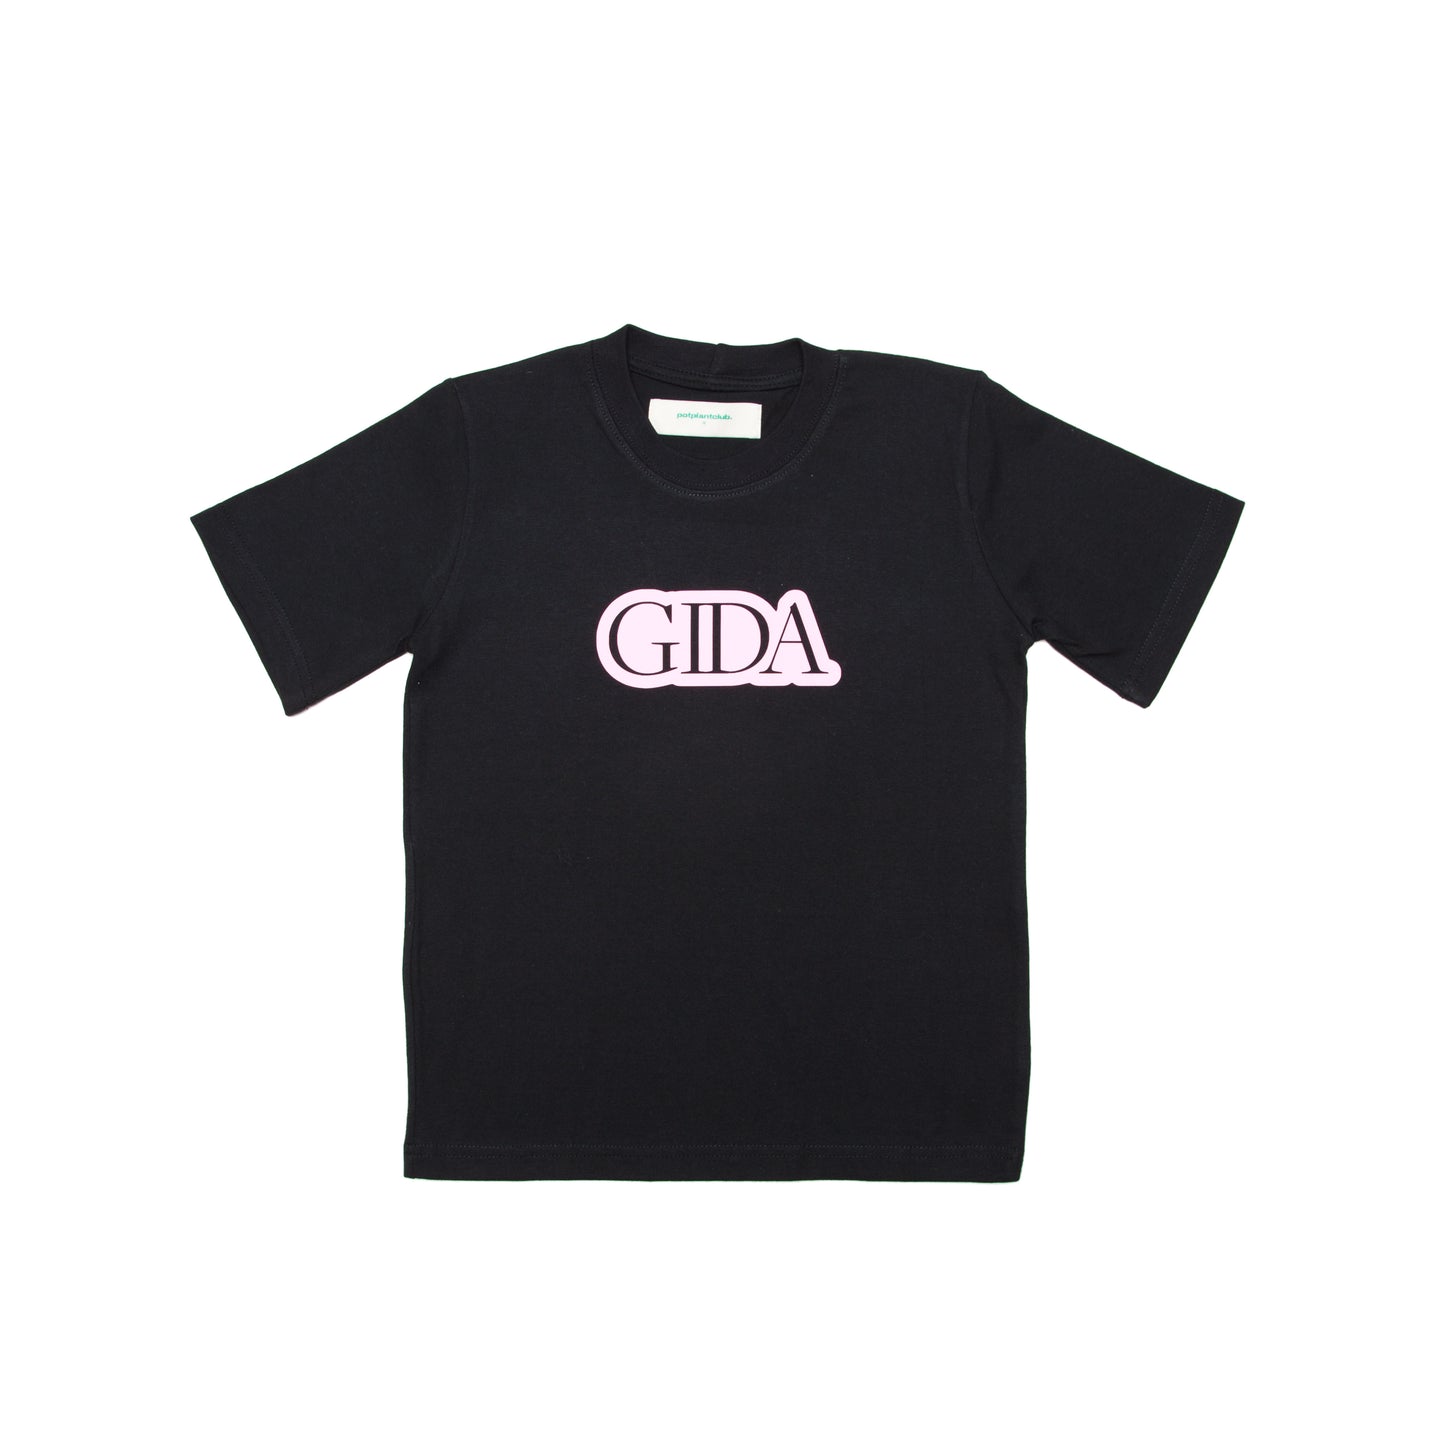 Gida "Pink" Baby T-shirt - Black